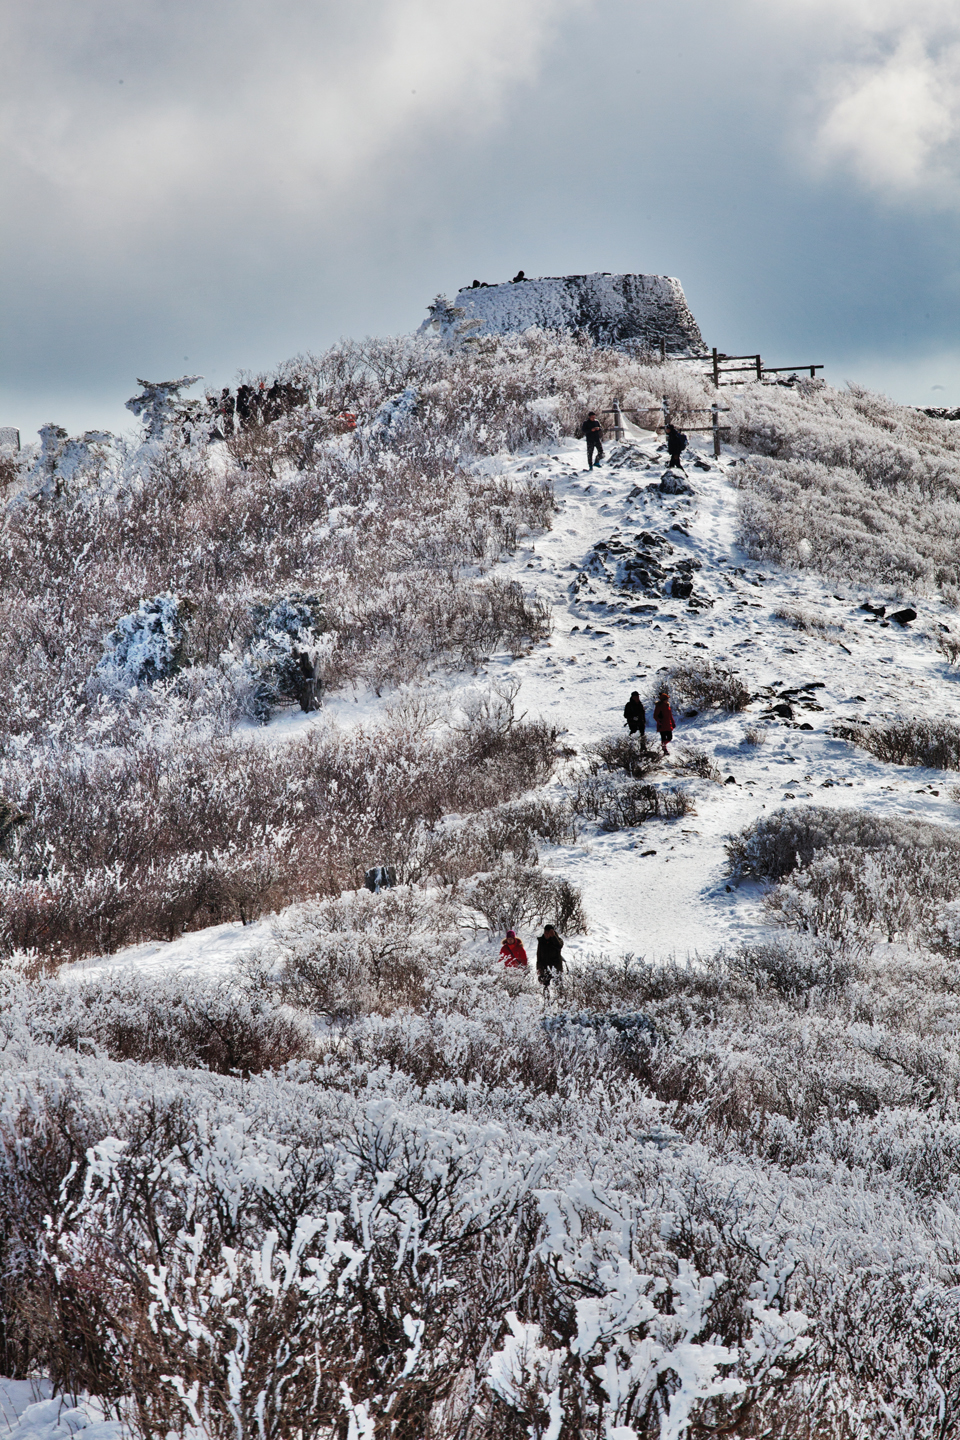 6. 태백(함백)산 - 적설량도 많은 태백산은 겨울 눈축제로 유명한 곳이다. 능선에 자라는 주목에 피는 눈꽃도 아름답다. 바로 옆 함백산도 설경이 좋은 명산이다.